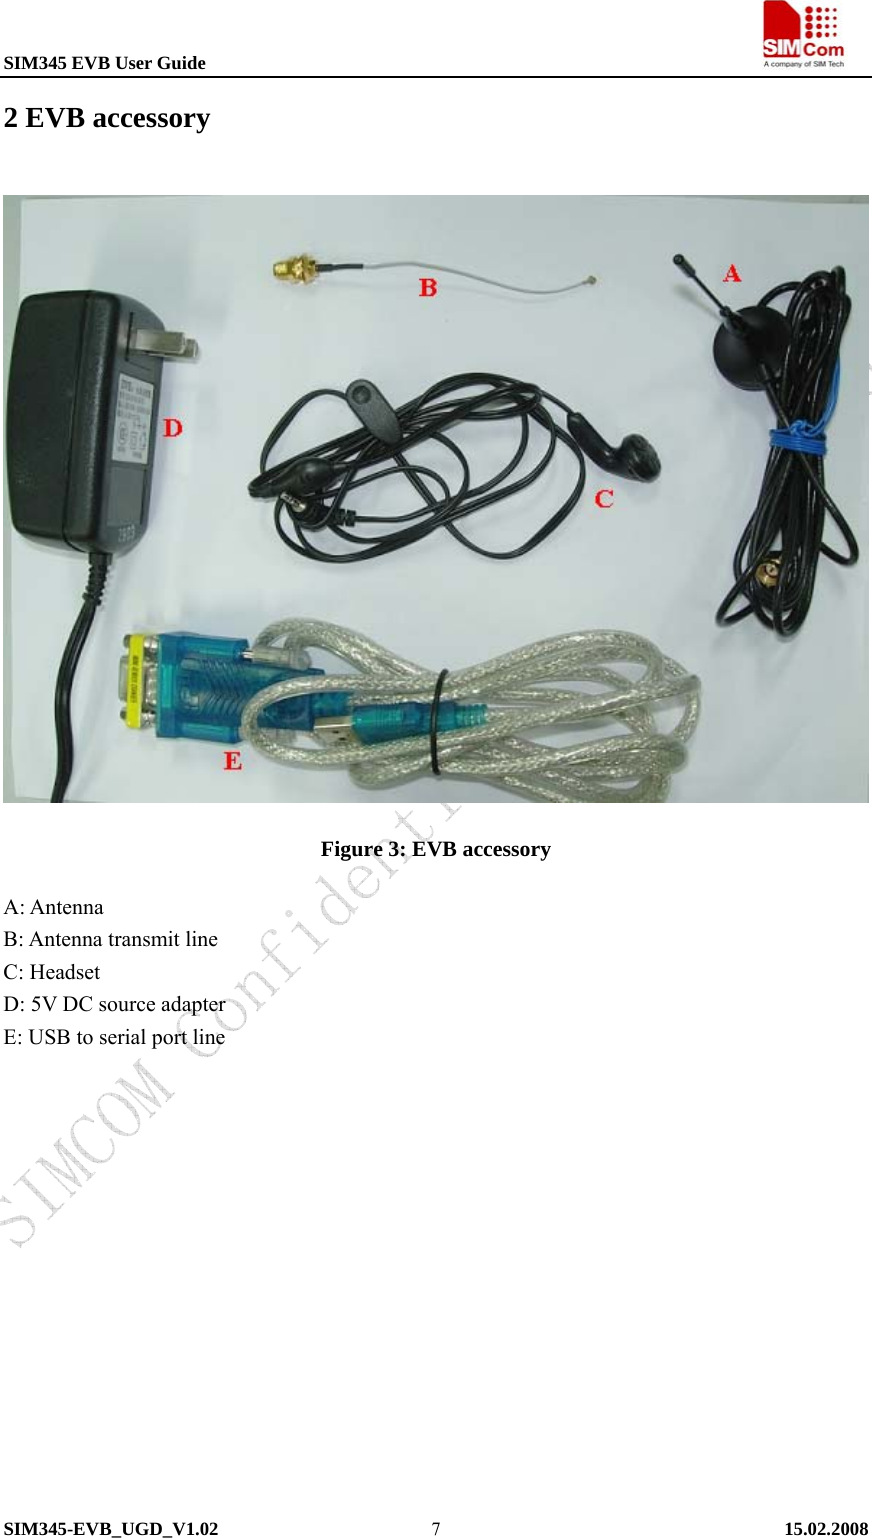 SIM345 EVB User Guide                                                             SIM345-EVB_UGD_V1.02   15.02.2008   72 EVB accessory  Figure 3: EVB accessory A: Antenna B: Antenna transmit line C: Headset D: 5V DC source adapter E: USB to serial port line   